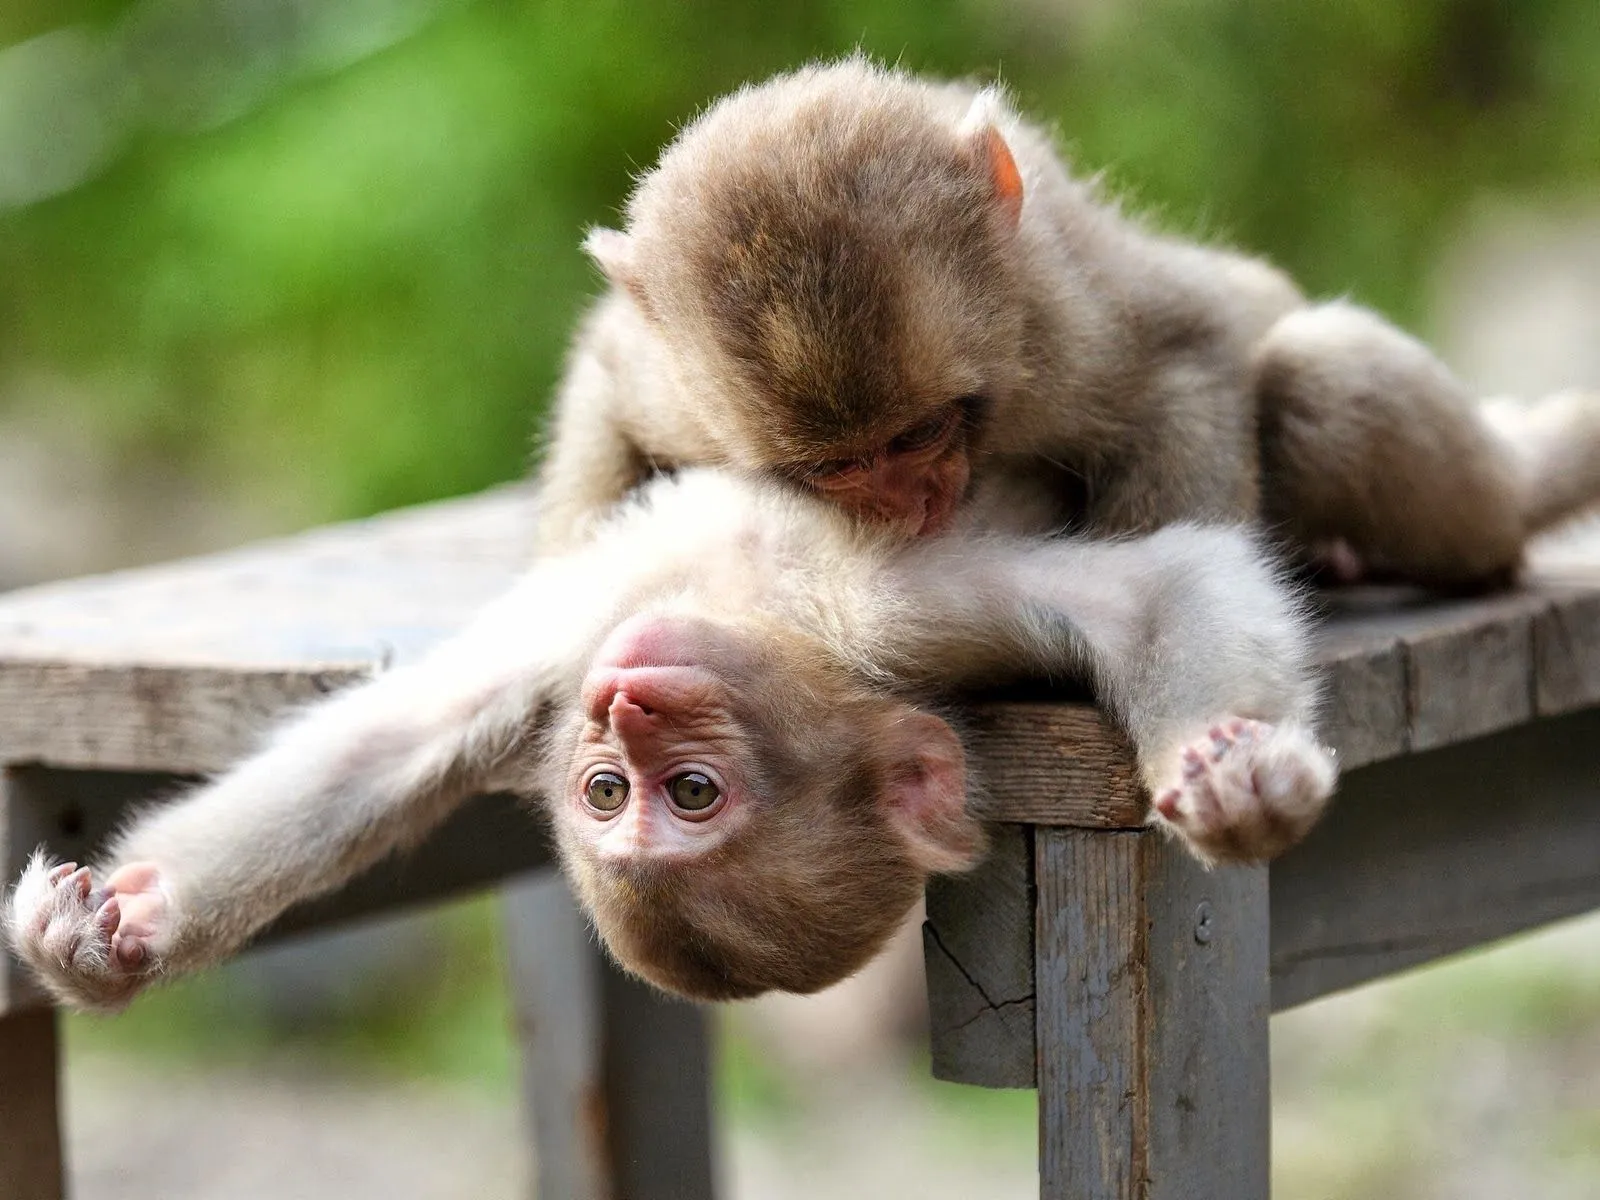 Fotos de parejas de monos Mejores fotos del mundo para facebook